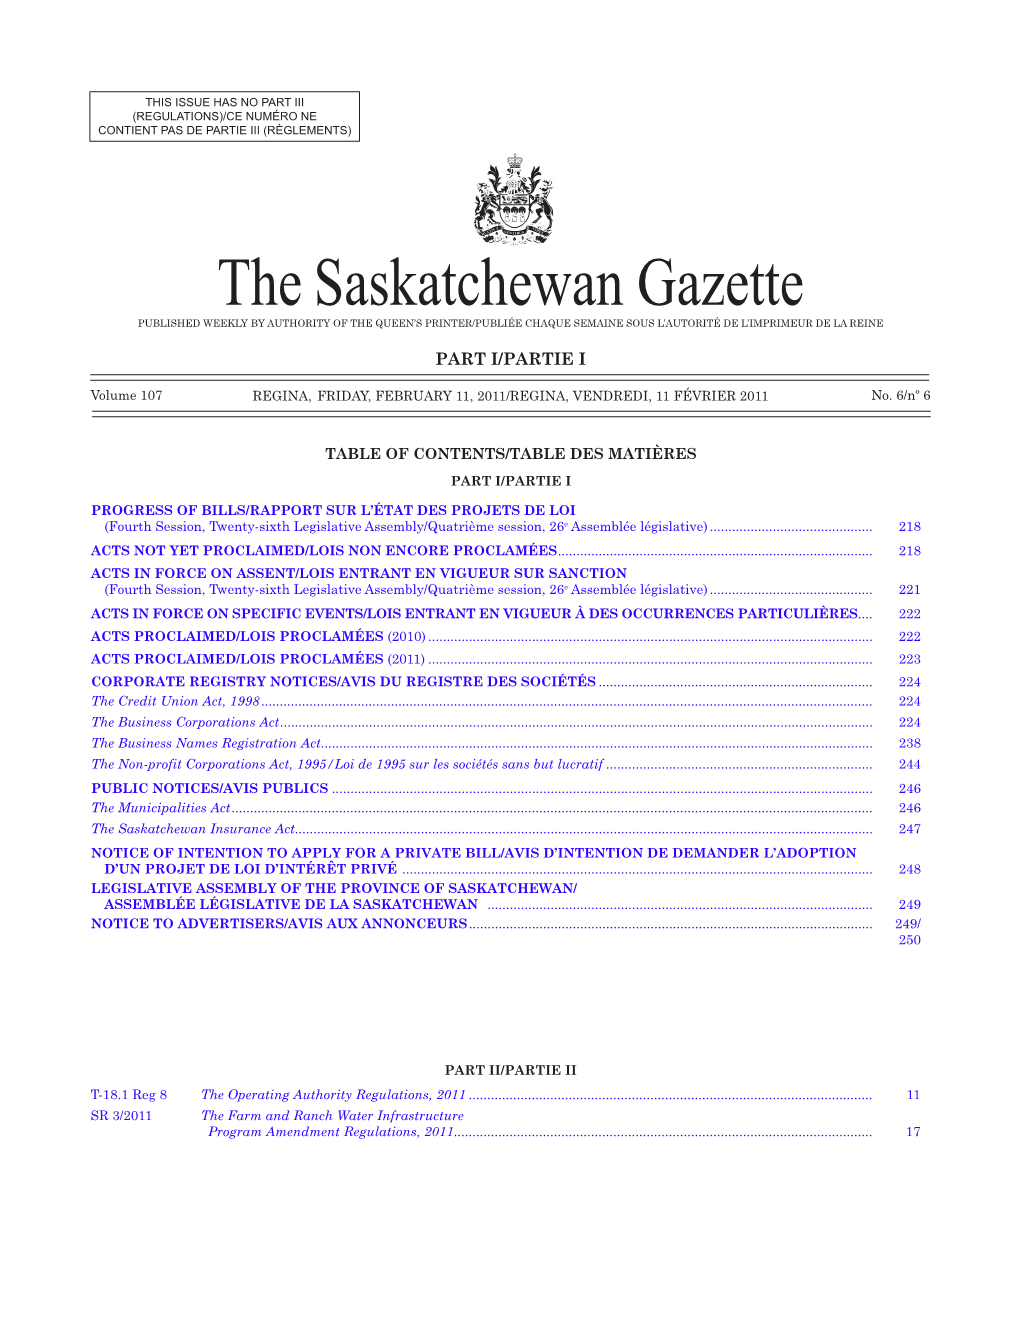 THE SASKATCHEWAN GAZETTE, February 11, 2011 217 (REGULATIONS)/CE NUMÉRO NE CONTIENT PAS DE PARTIE III (RÈGLEMENTS)